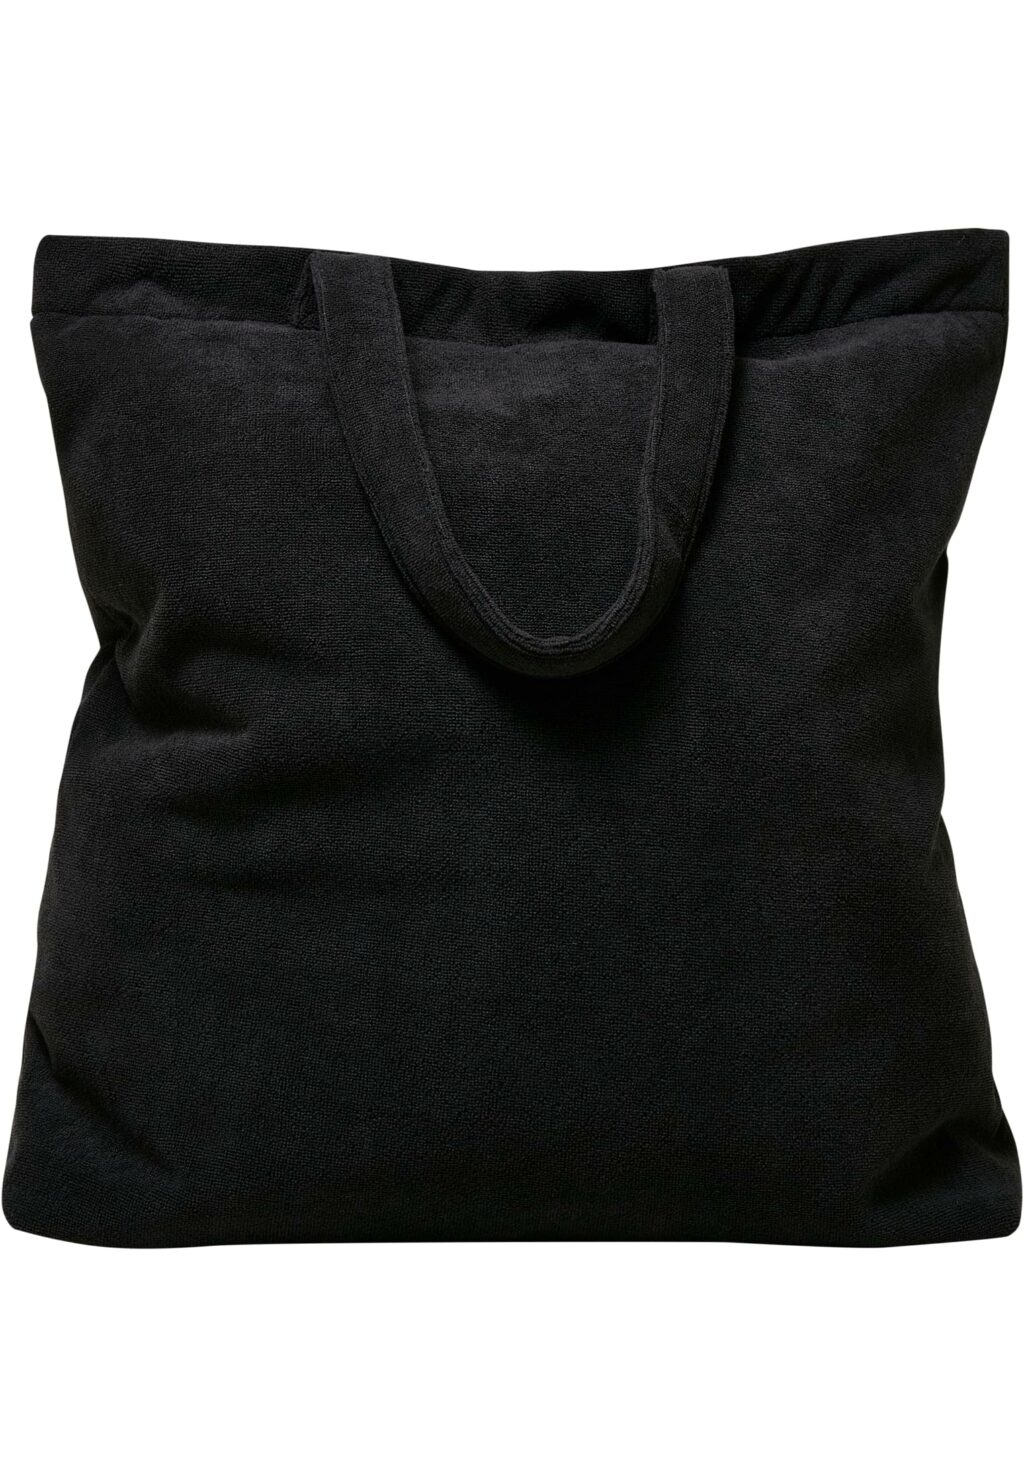 SLAY DIY Terry Tote Bag black one MT2262